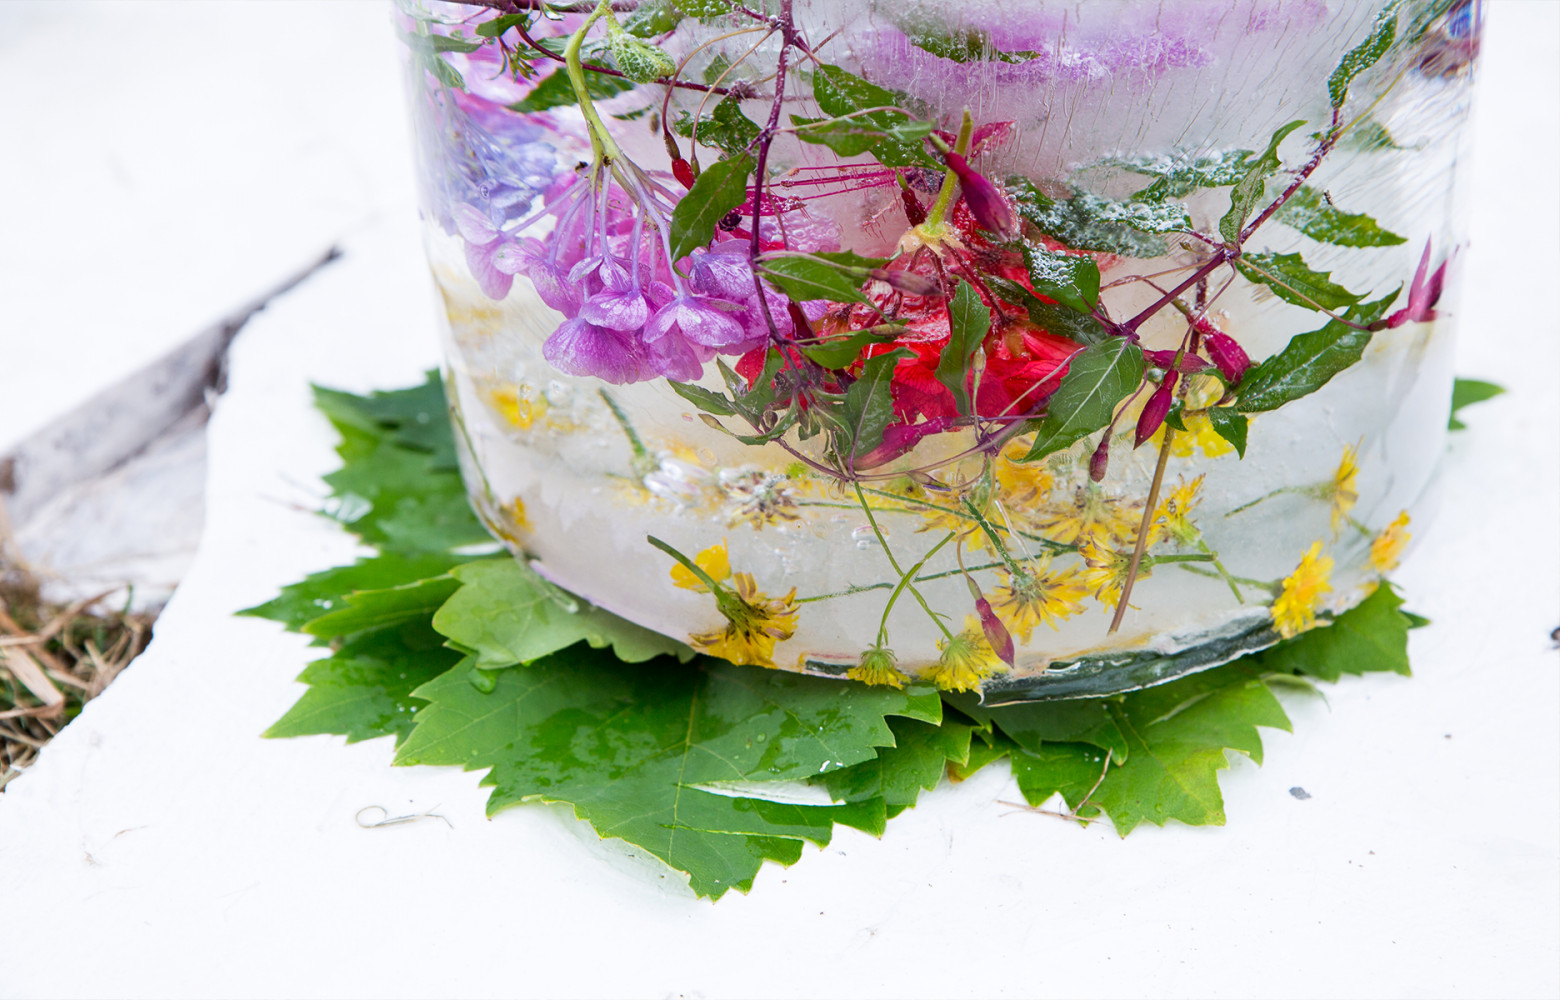 Des fleurs parfument ce morceau de glace qui a été utilisé pour la préparation d'un thé taiwanais...